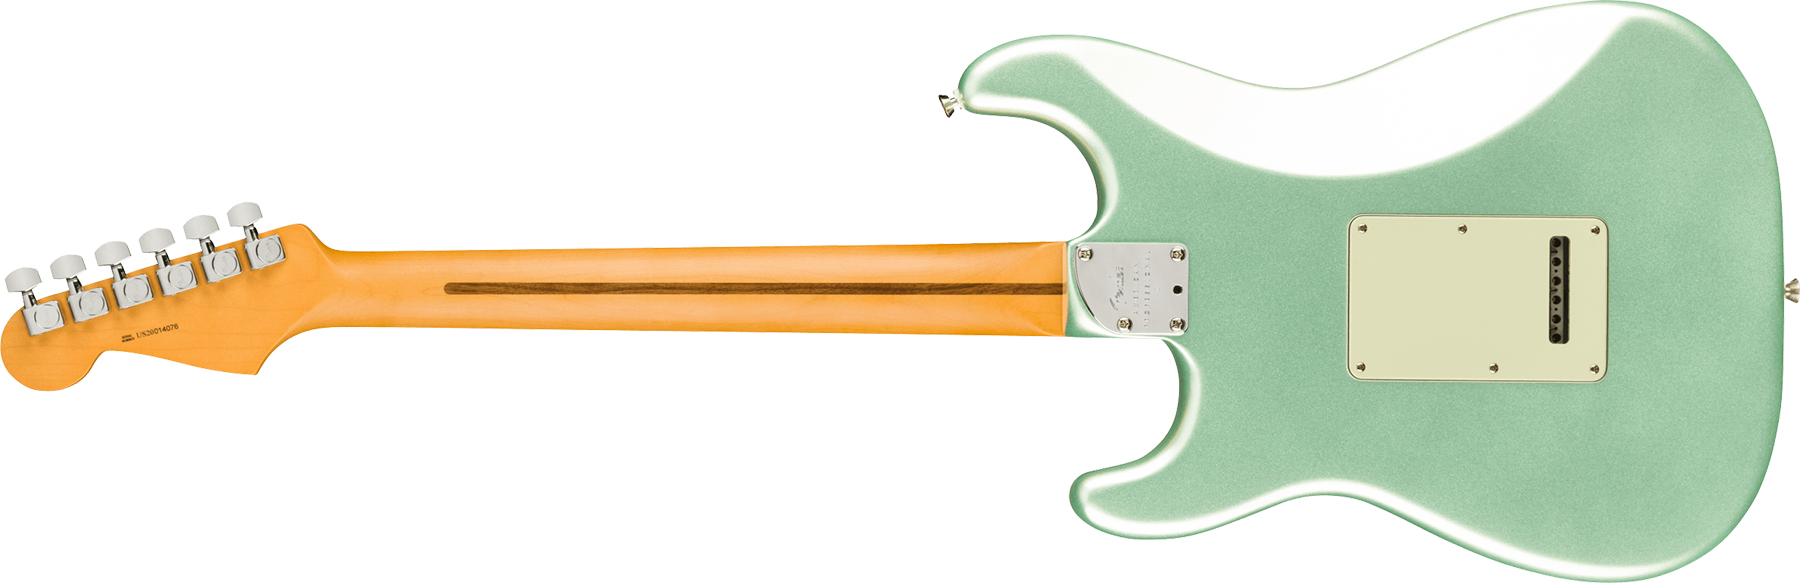 Fender Strat American Professional Ii Lh Gaucher Usa Mn - Mystic Surf Green - Guitarra electrica para zurdos - Variation 1